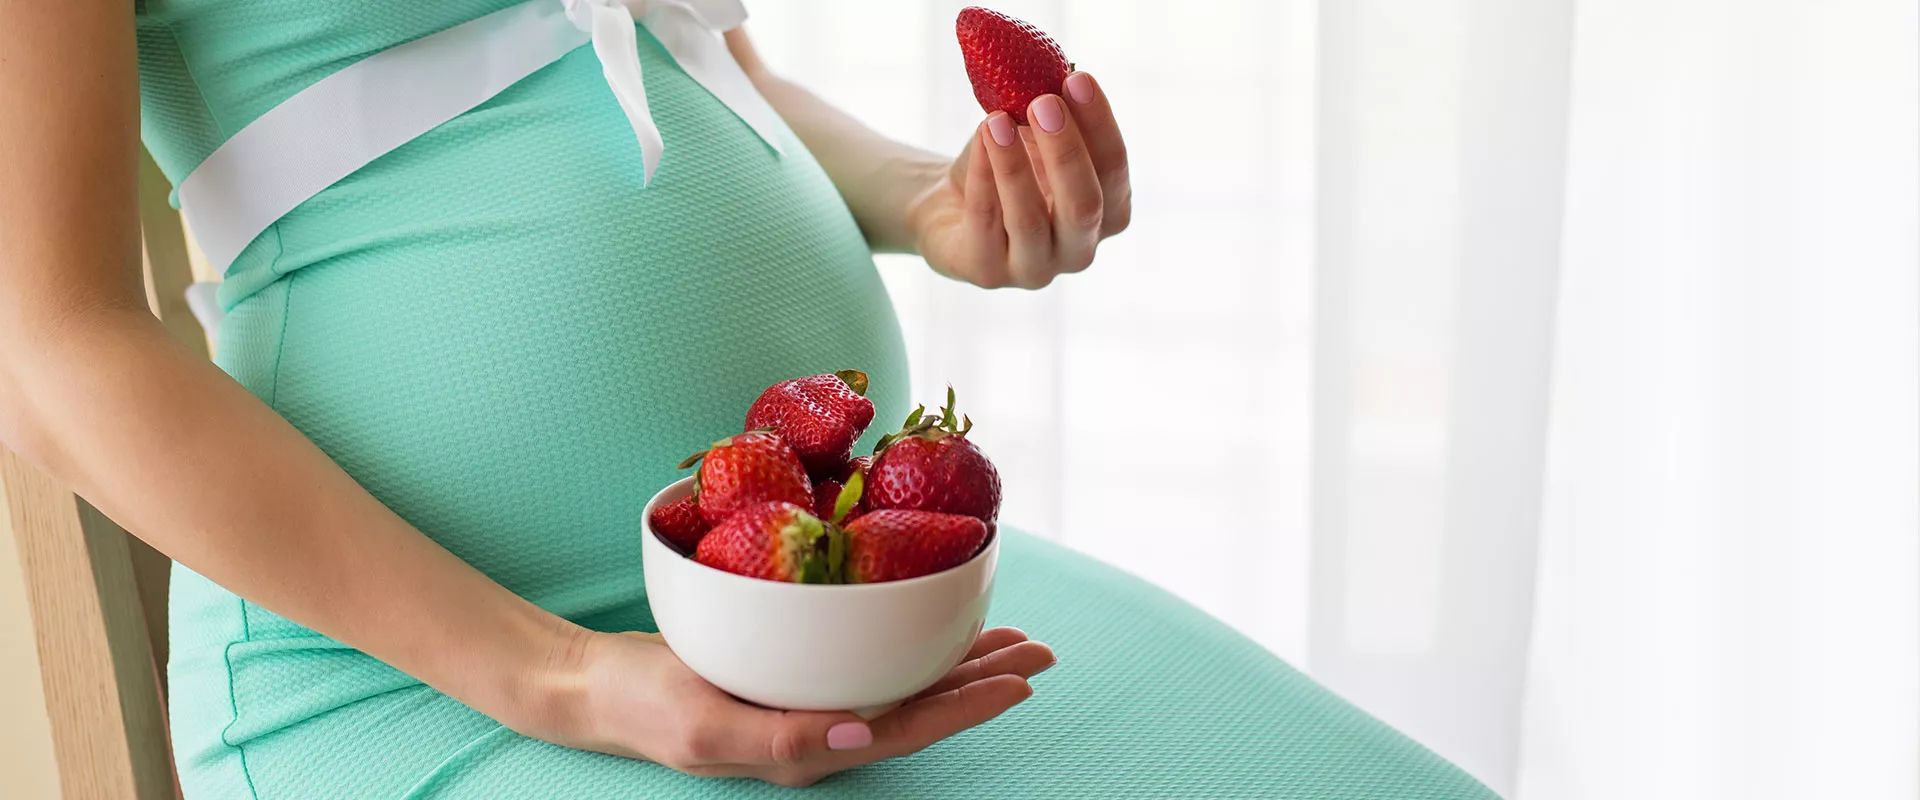 Doğurganlığı Arttırmaya Yarayan Besinler Nelerdir?